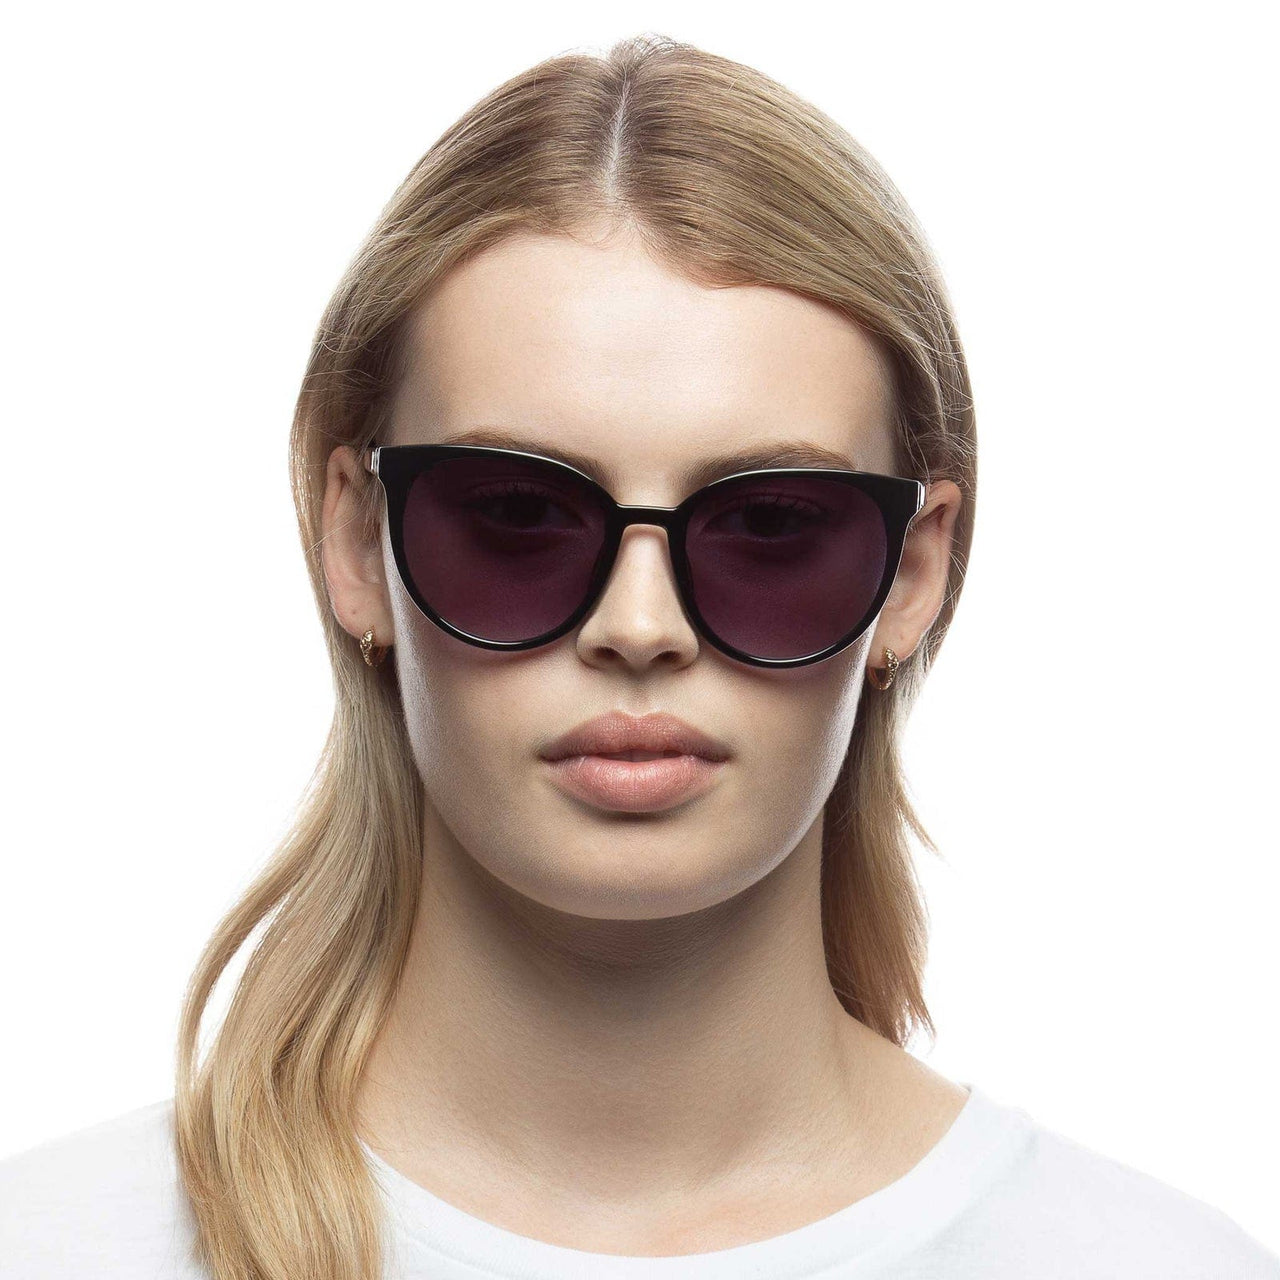 Armada Sunglasses Black, Sunglasses by Le Spec | LIT Boutique